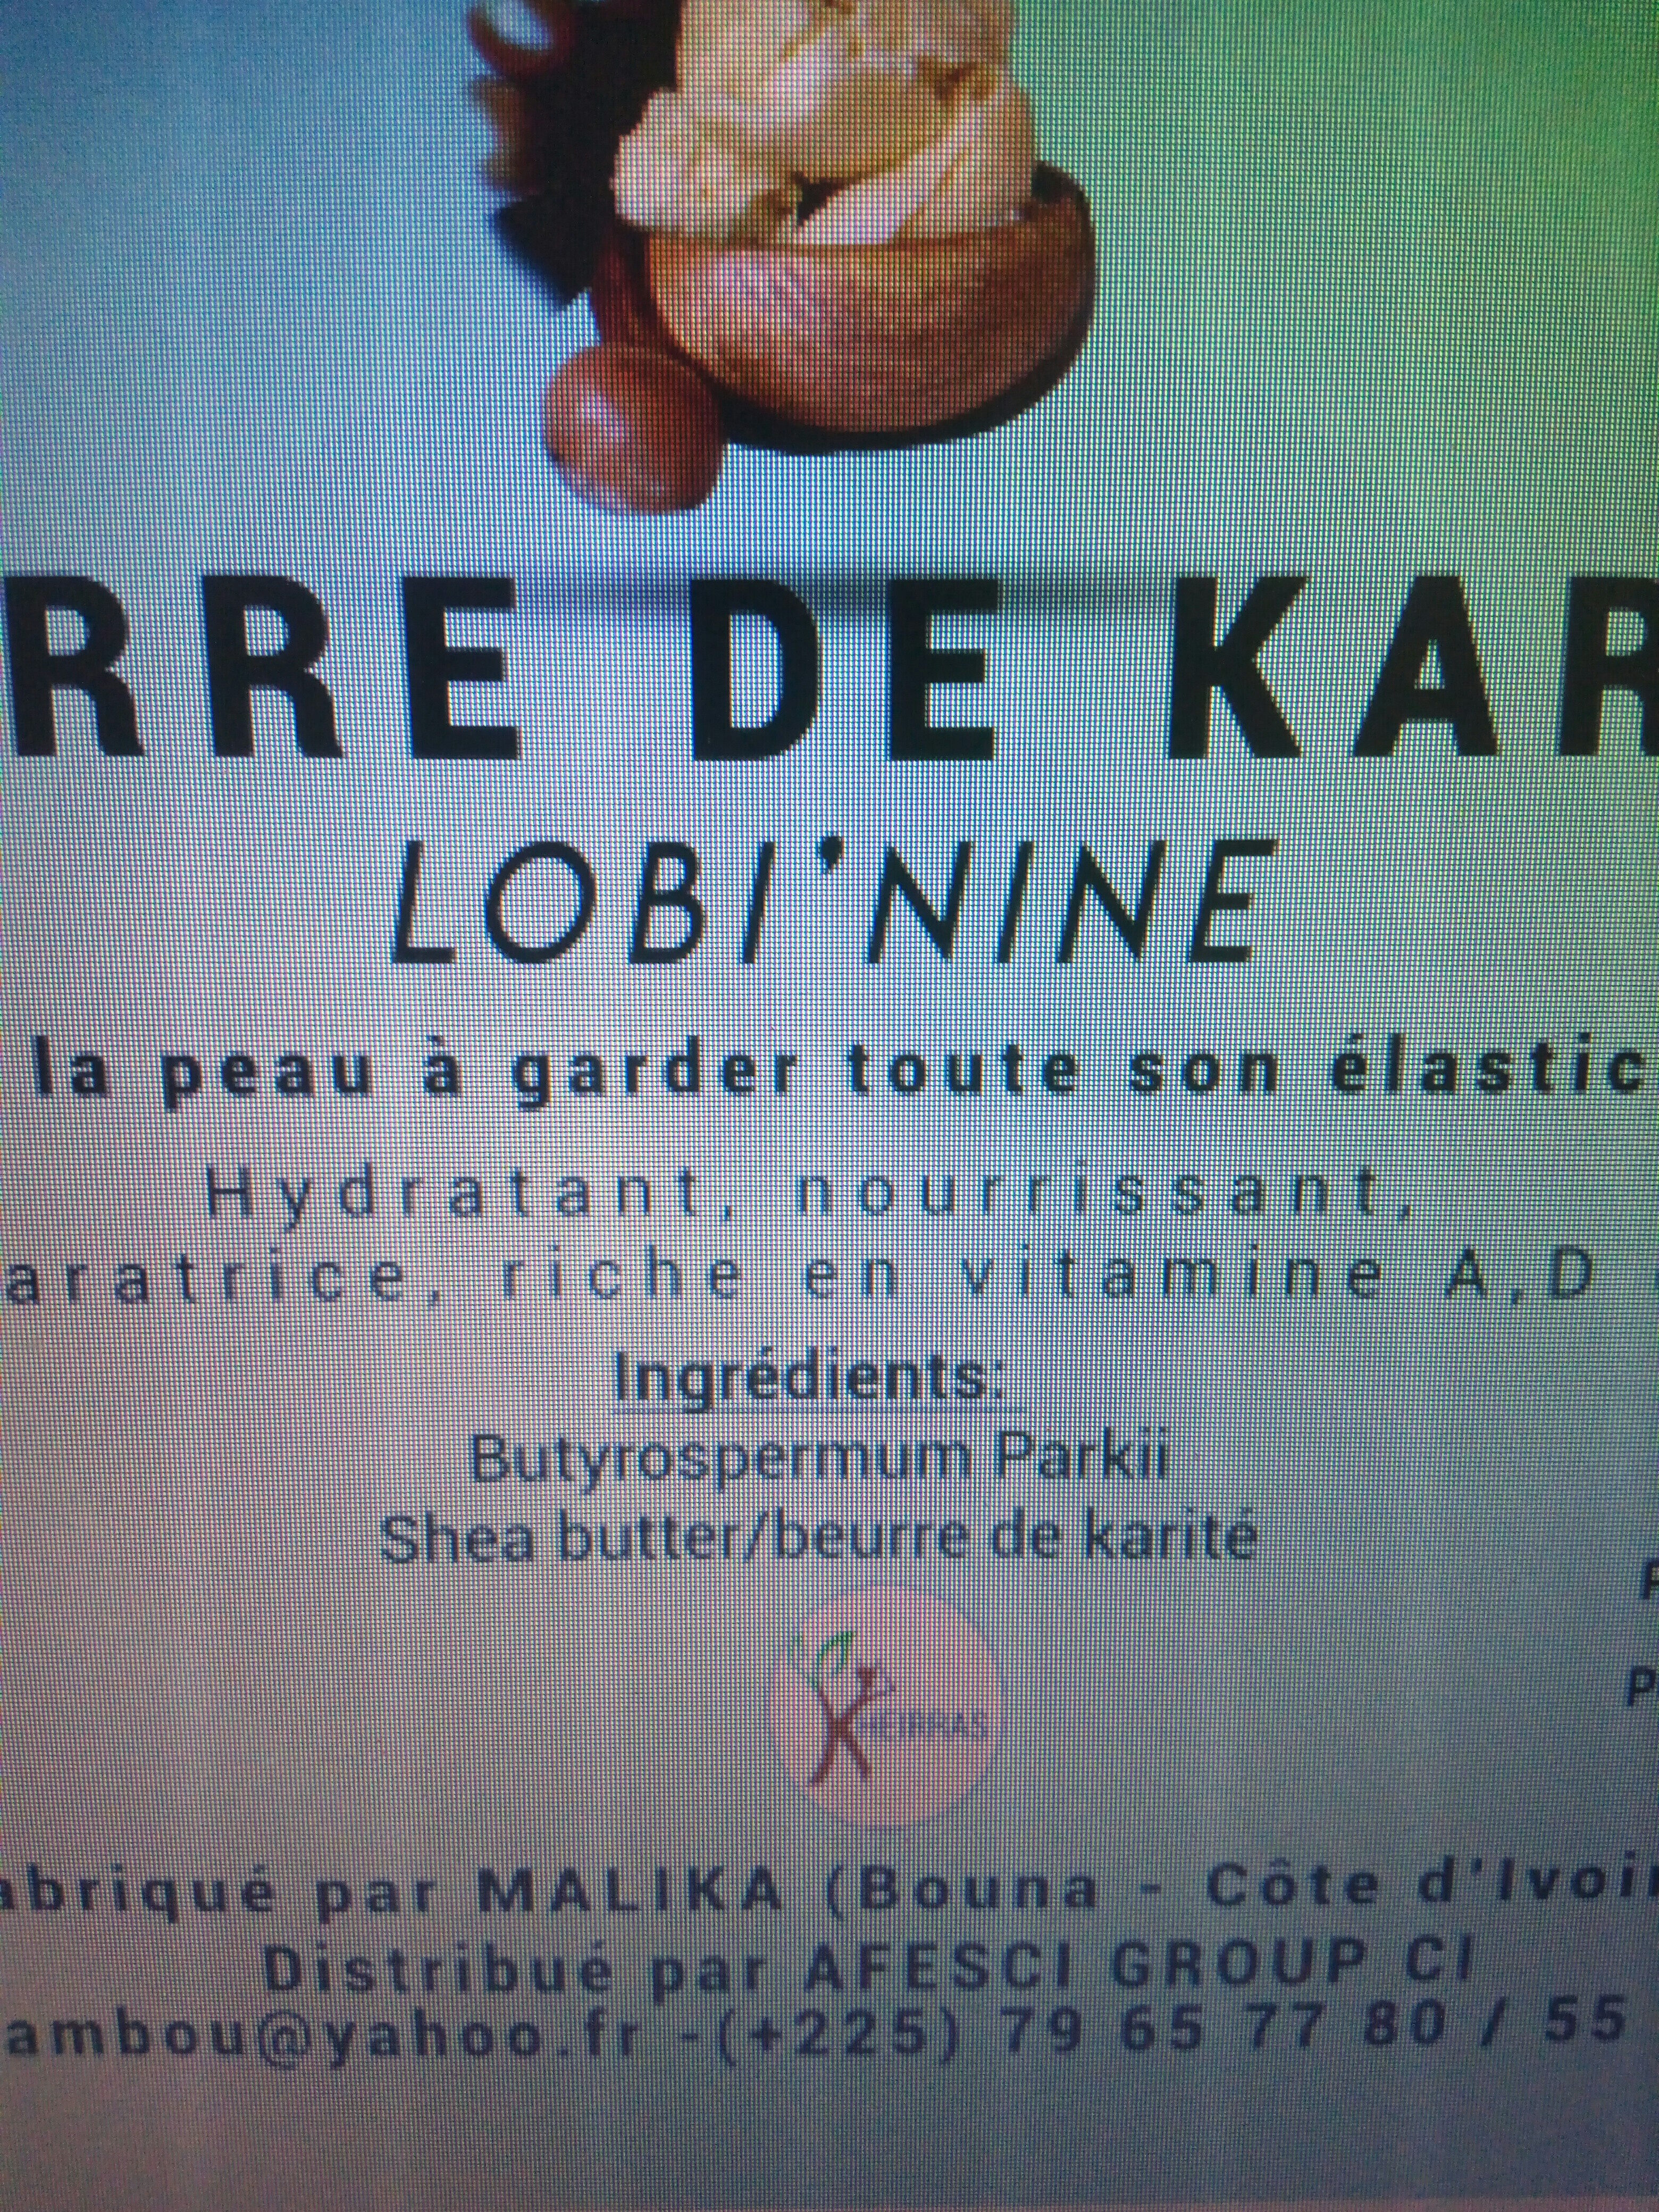 Beurre de karité - Ингредиенты - fr